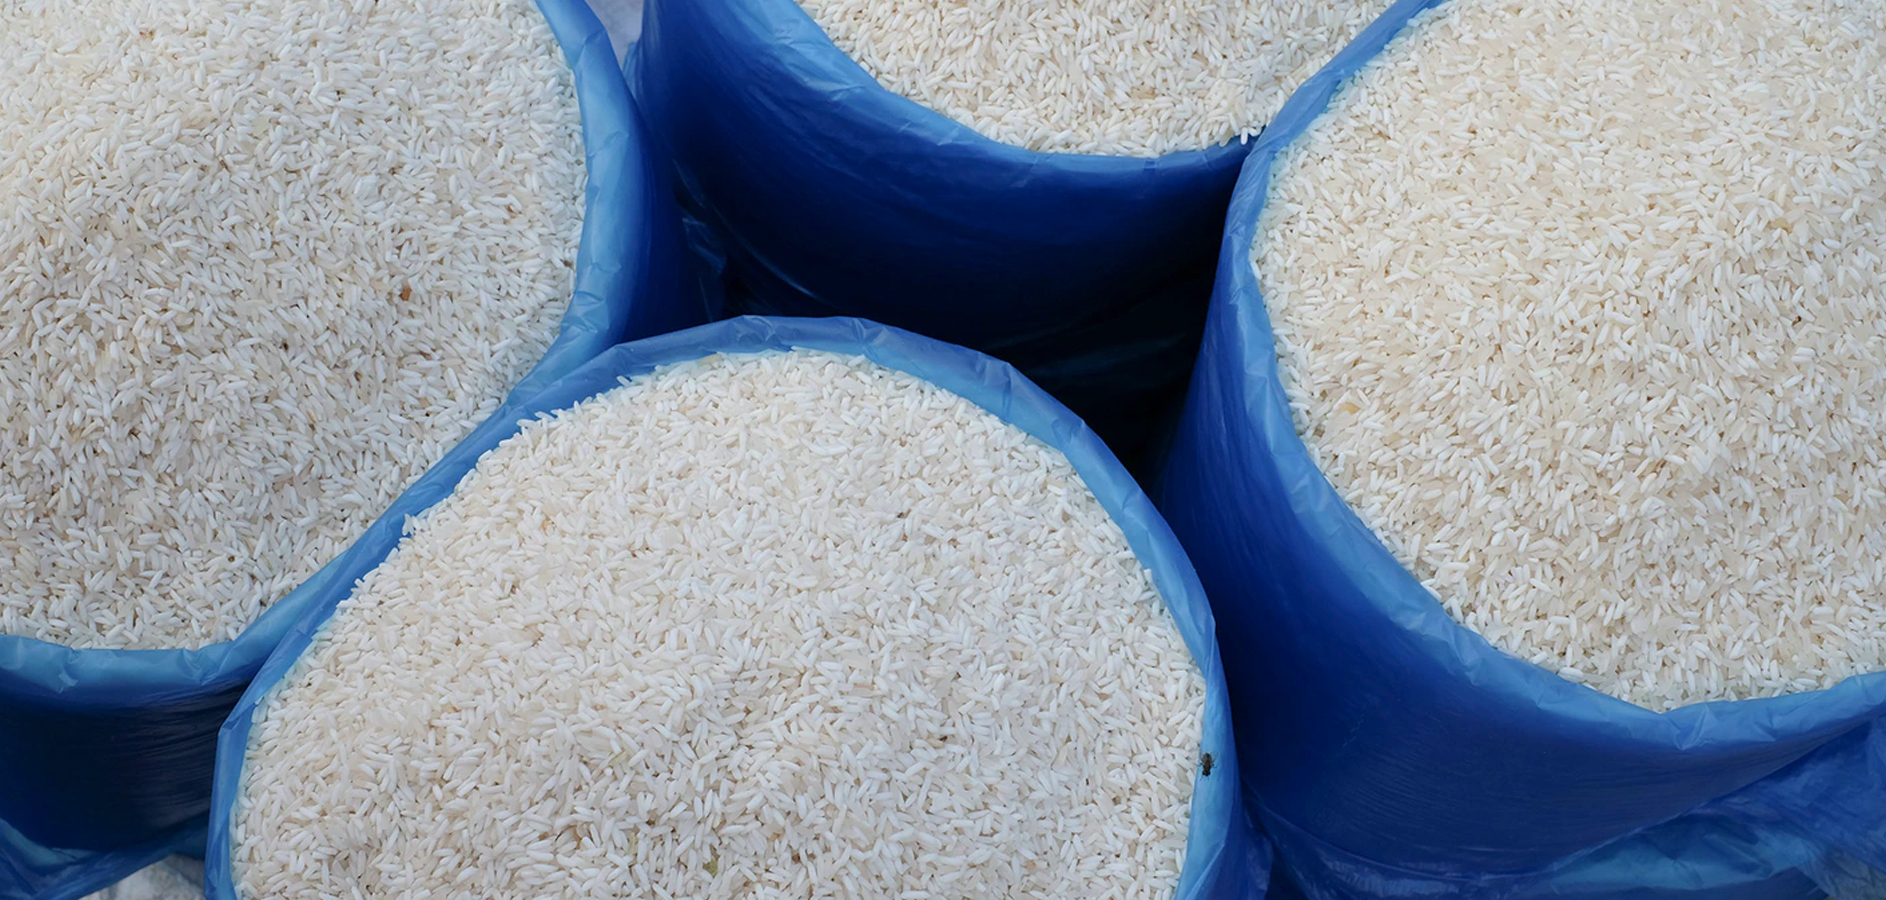 O governo deveria estocar arroz, não você